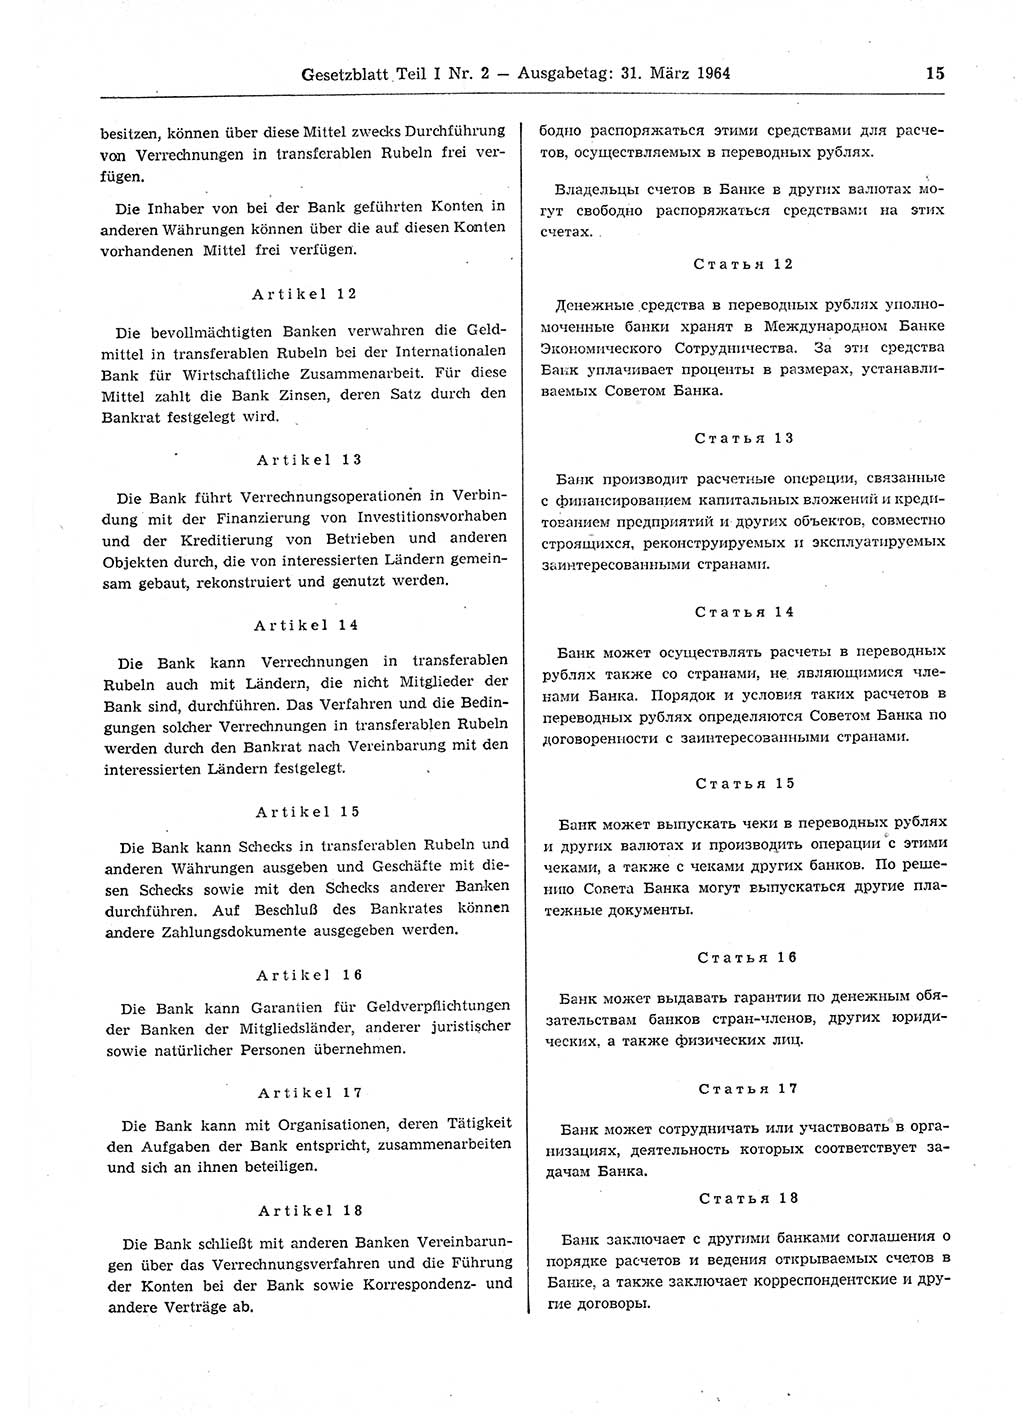 Gesetzblatt (GBl.) der Deutschen Demokratischen Republik (DDR) Teil Ⅰ 1964, Seite 15 (GBl. DDR Ⅰ 1964, S. 15)